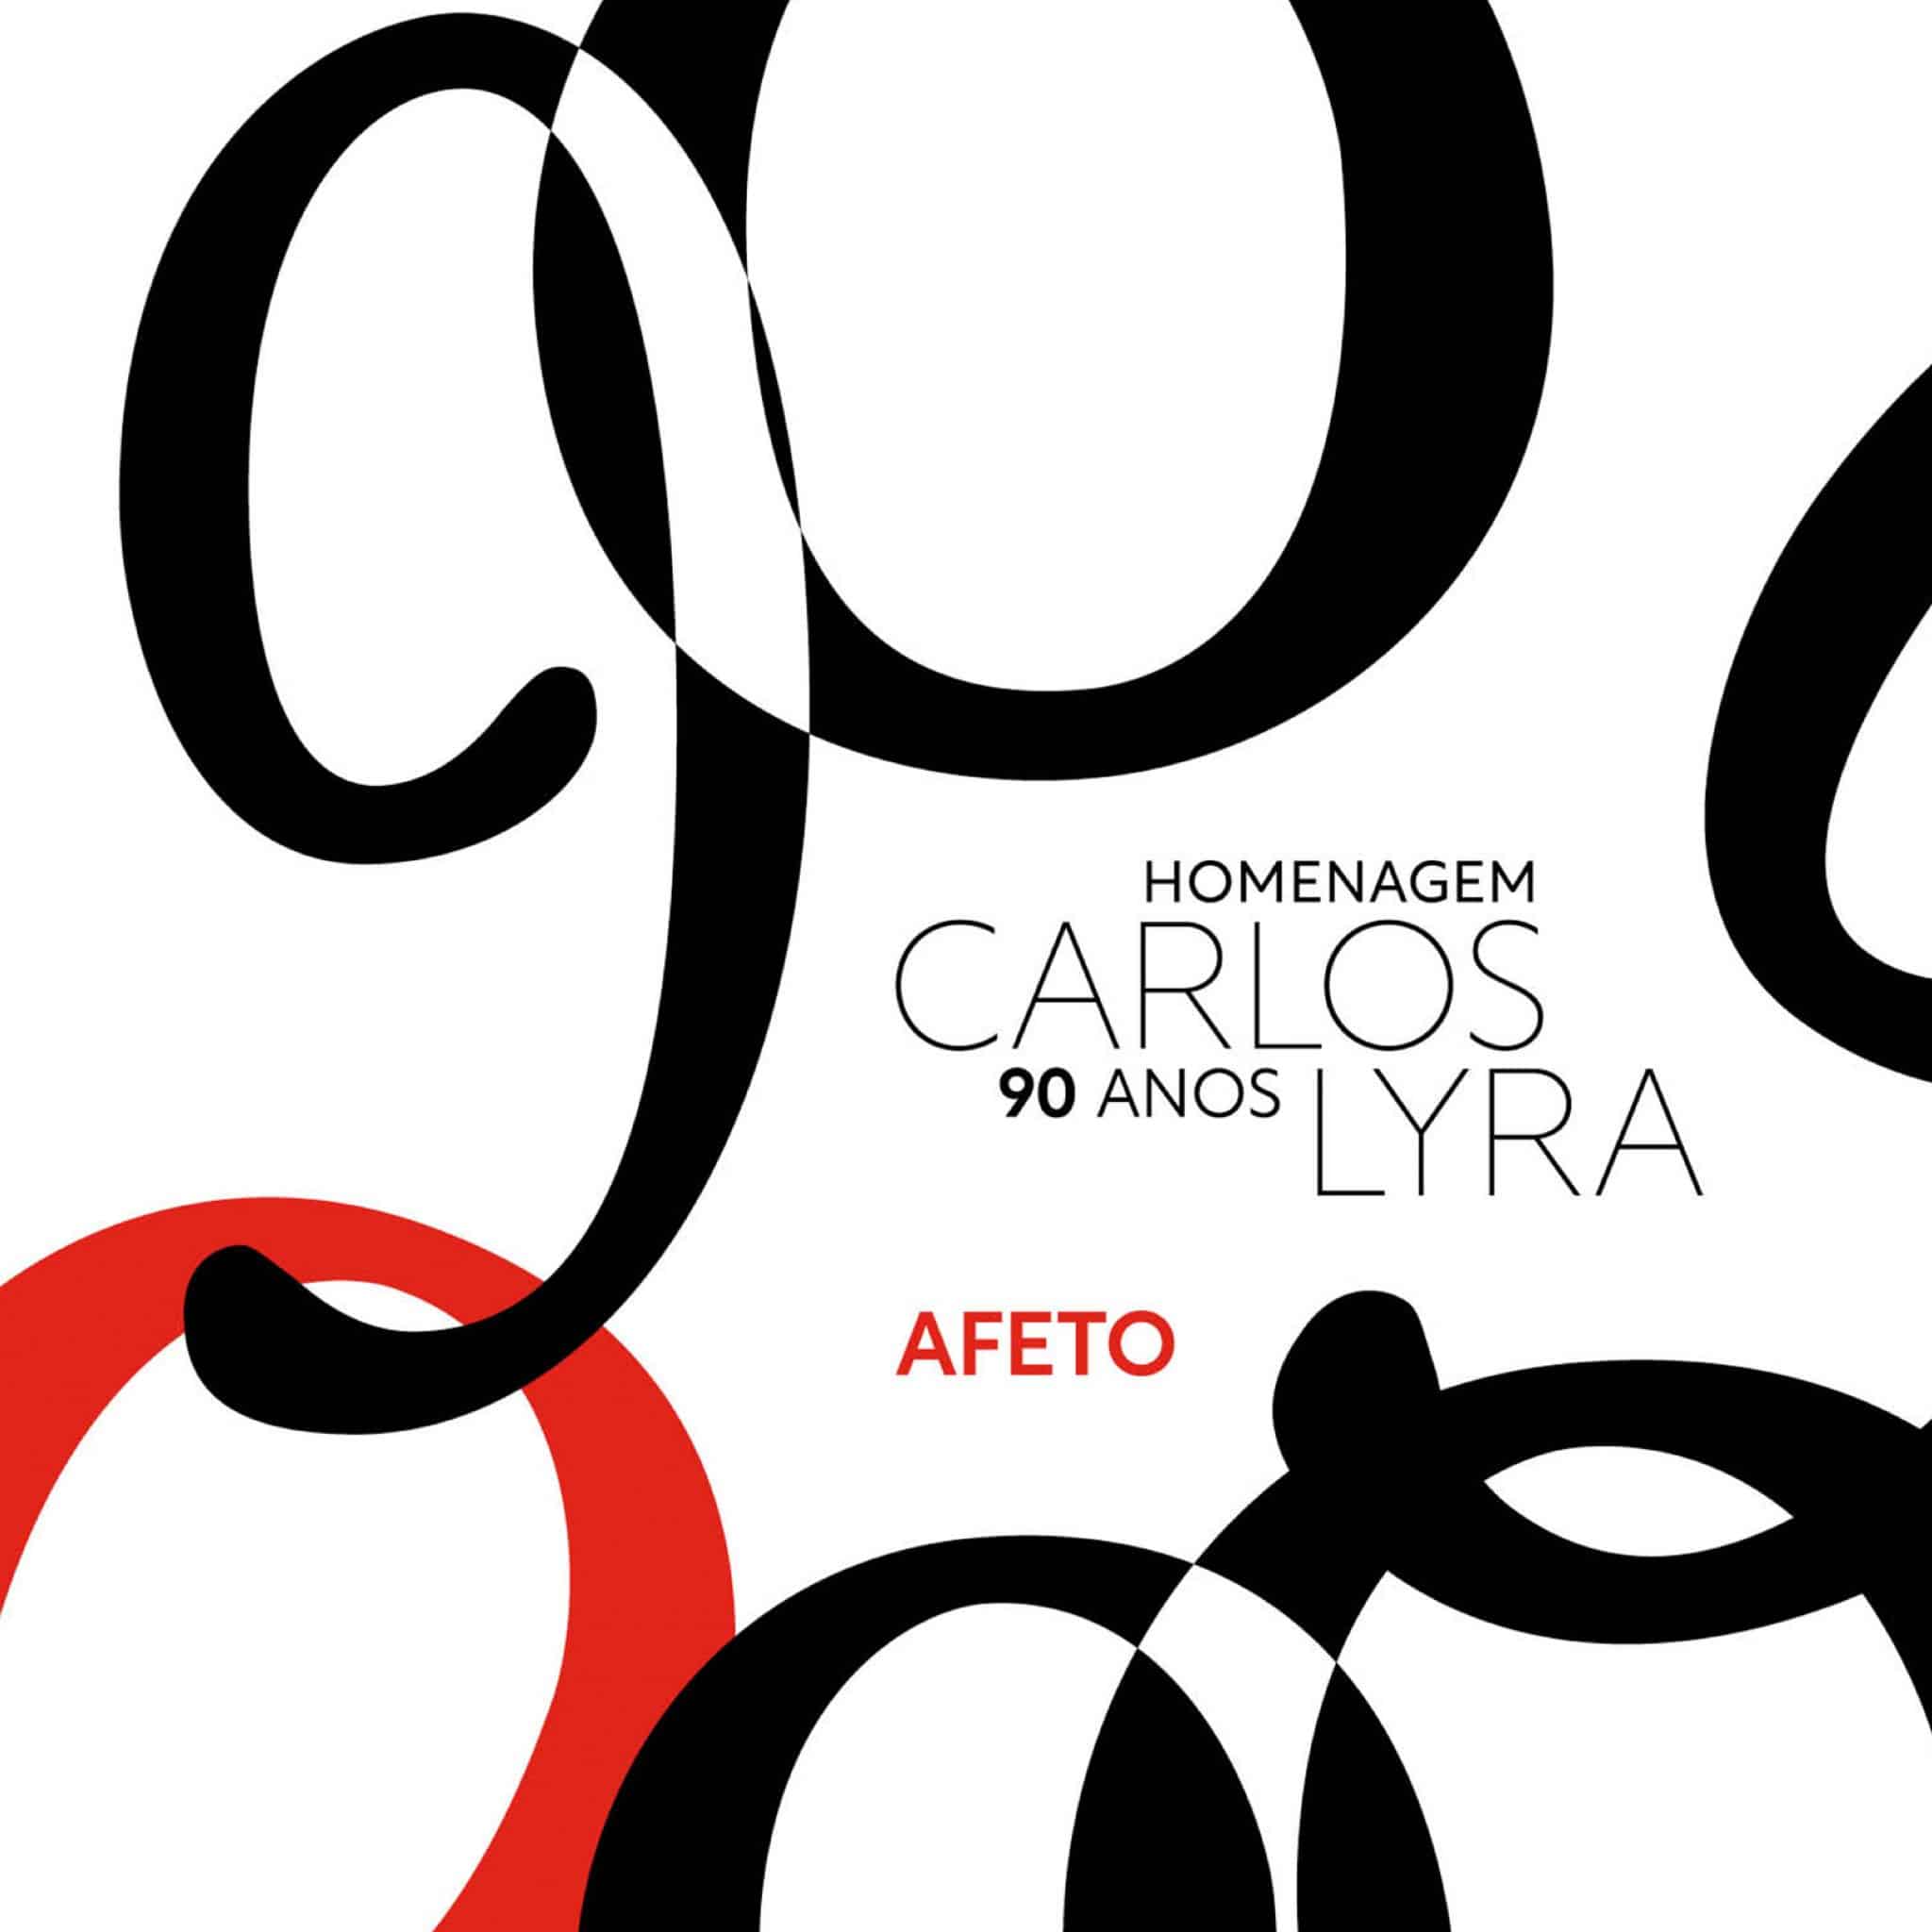 revistaprosaversoearte.com - Selo Sesc lança 'Afeto', disco que celebra os 90 anos de Carlos Lyra